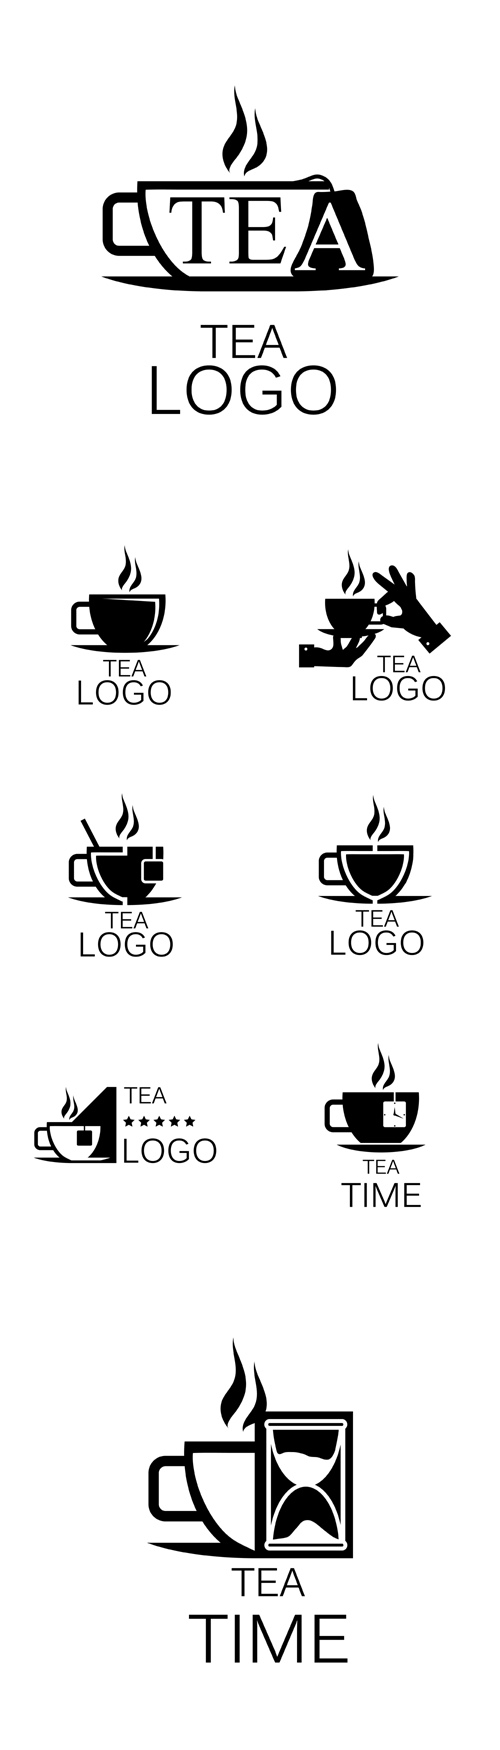 Vectors - Tea Logos